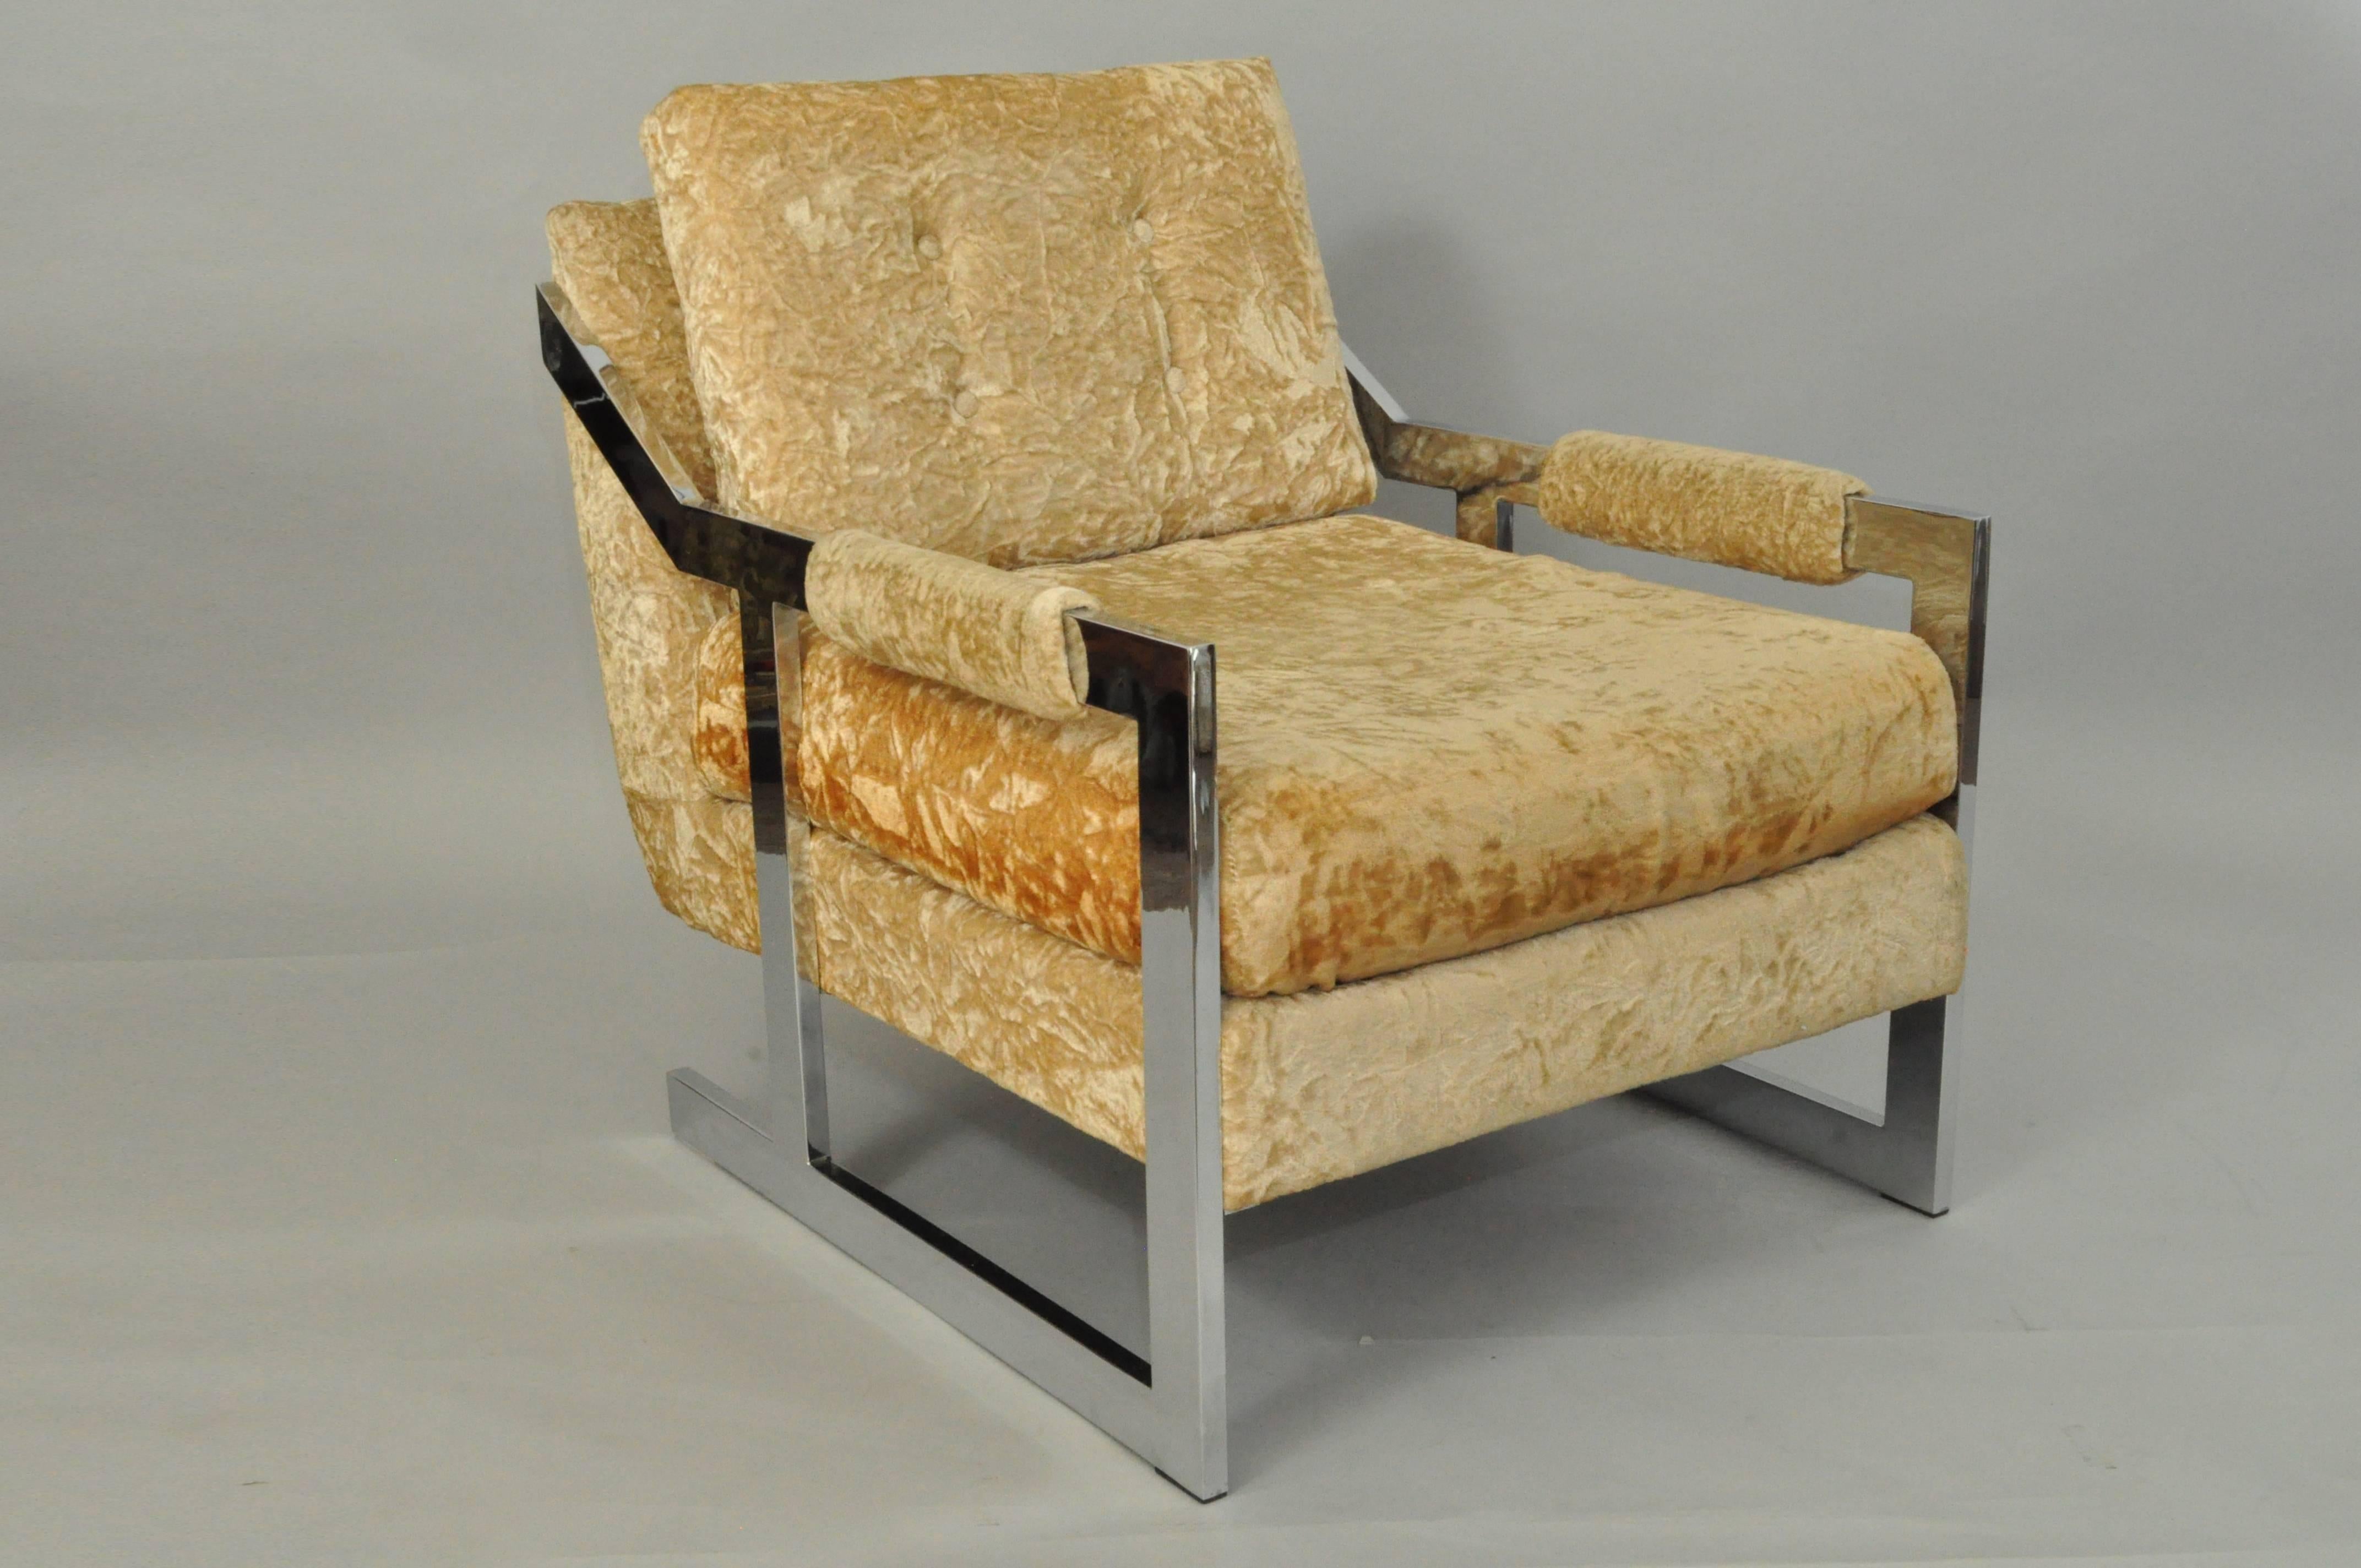 Original Vintage Mid-Century Modern Carsons von High Point Chrom flache Bar Lounge-Sessel im Stil von Milo Baughman. Der Stuhl zeichnet sich durch einen einzigartigen abgewinkelten Chromrahmen, eine originelle Polsterung und klare modernistische